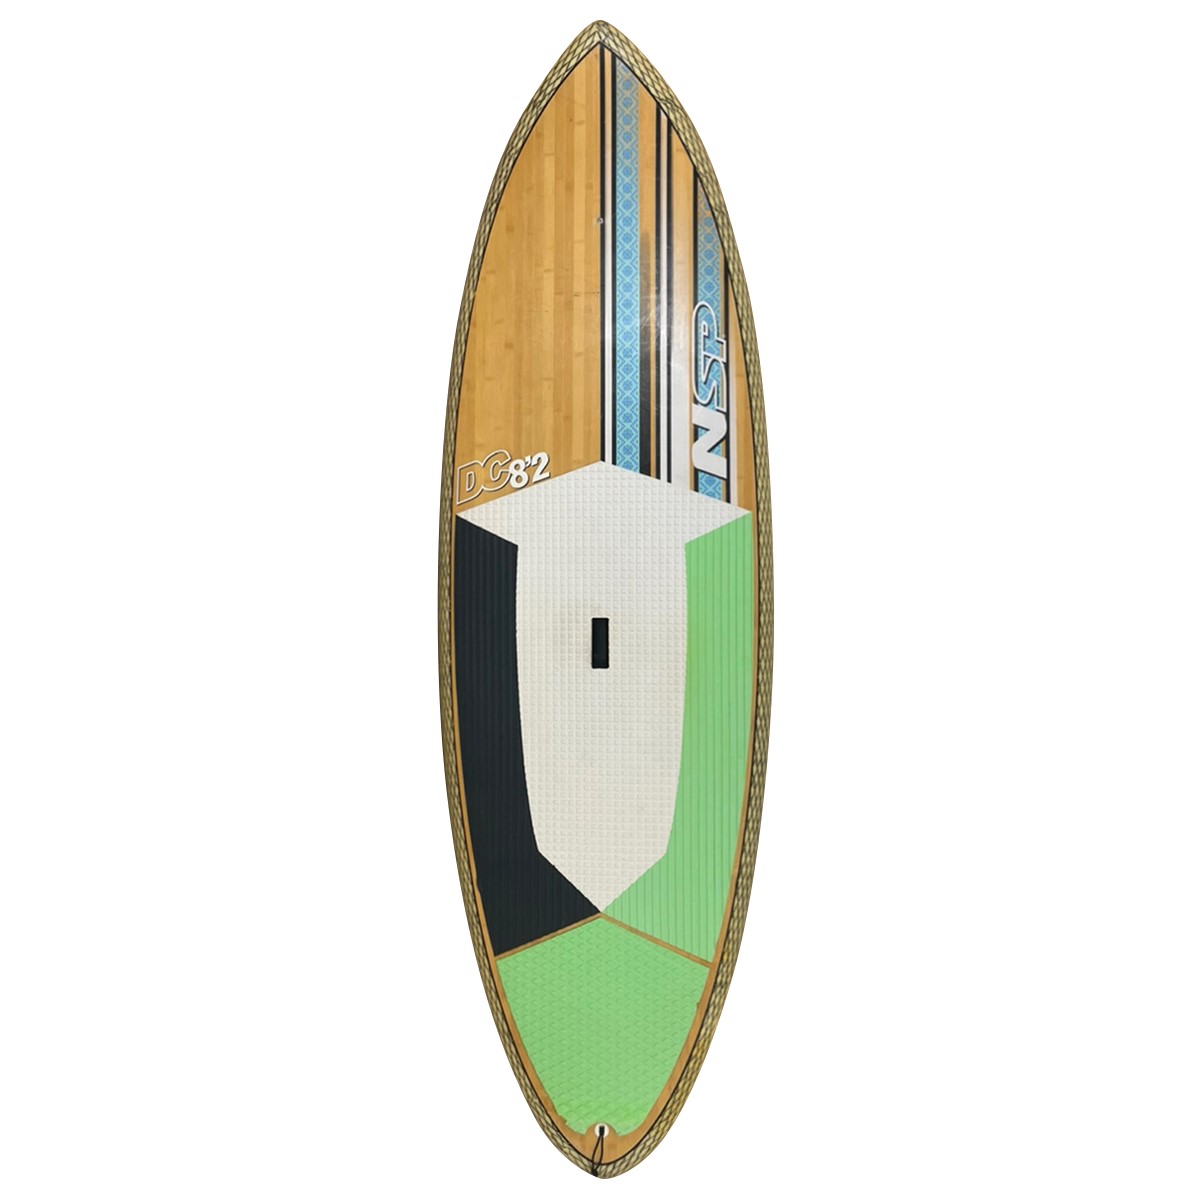 サーフボード検索 | USED SURF×SURF MARKET